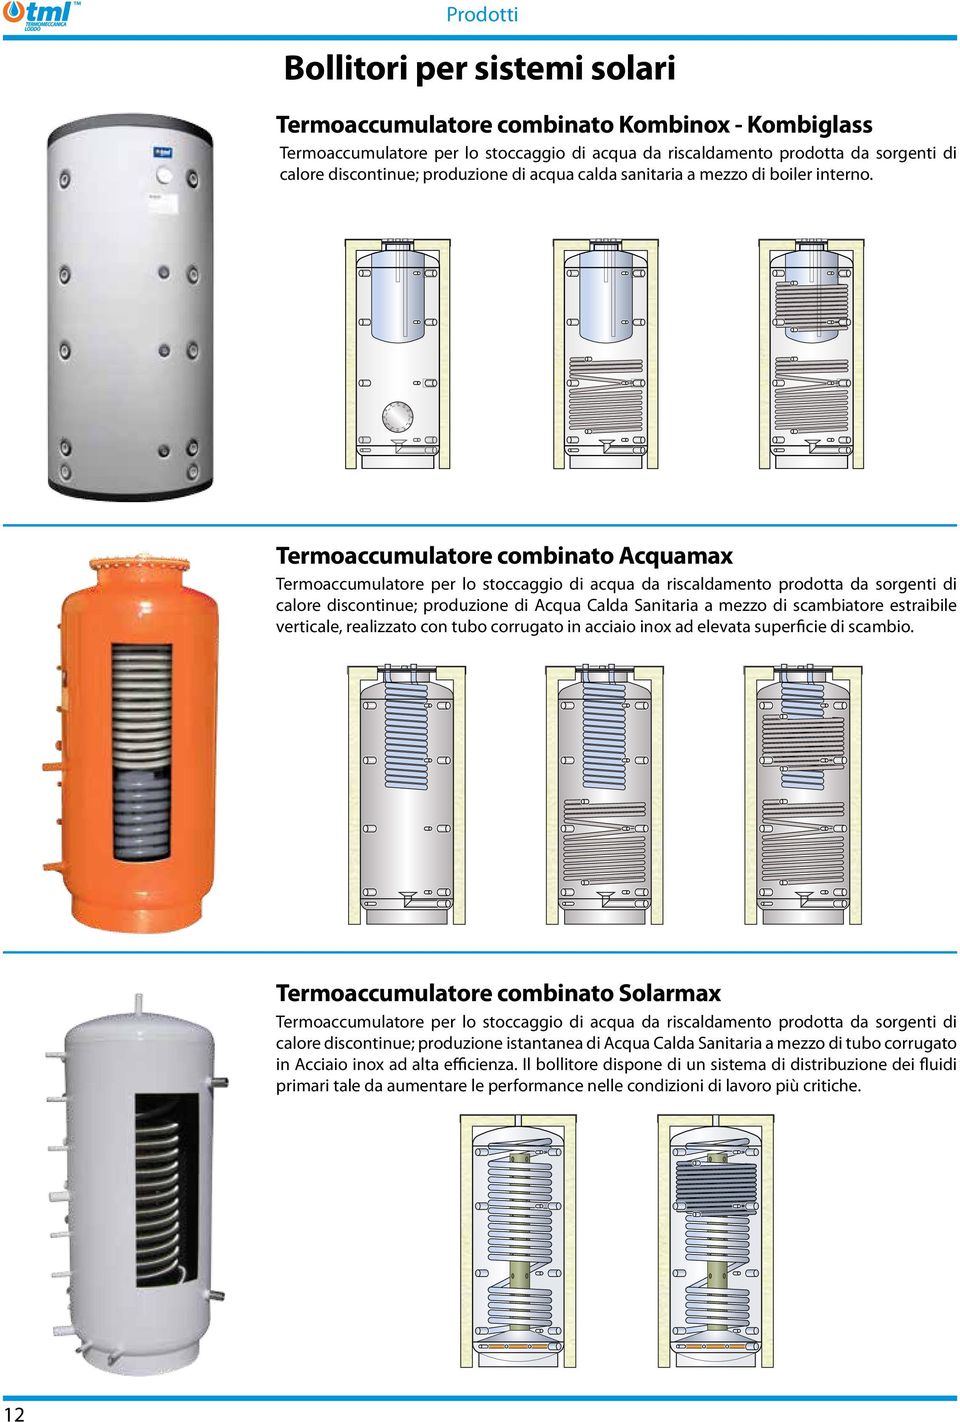 Termoaccumulatore combinato Acquamax Termoaccumulatore per lo stoccaggio di acqua da riscaldamento prodotta da sorgenti di calore discontinue; produzione di Acqua Calda Sanitaria a mezzo di